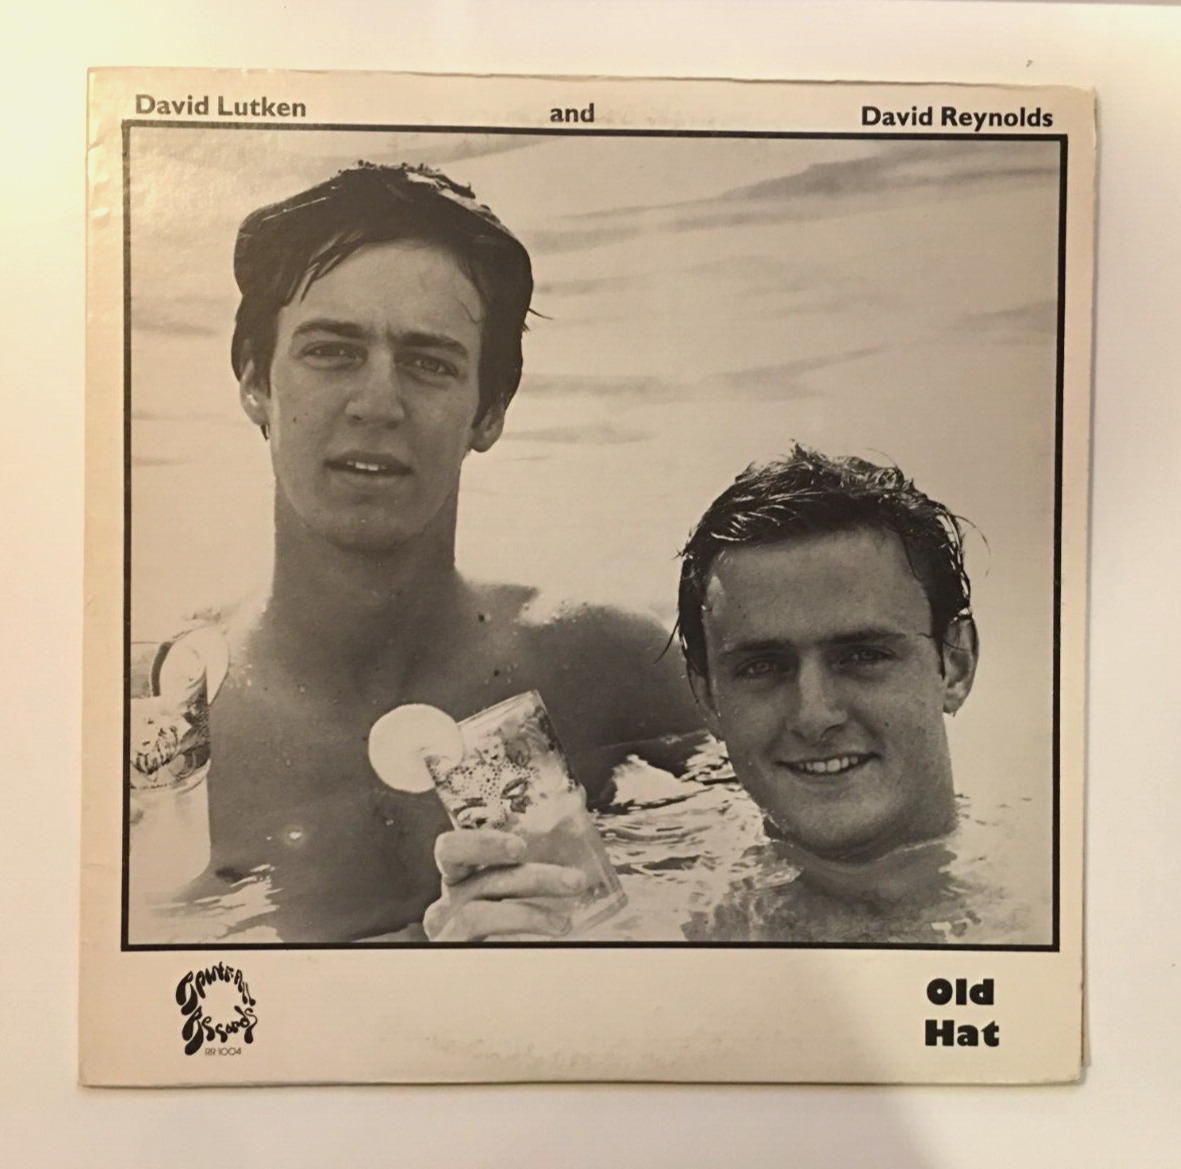 David Lutken & David Reynolds Vinyl LP Old Hat (1980) Rainfall Records RR-1004